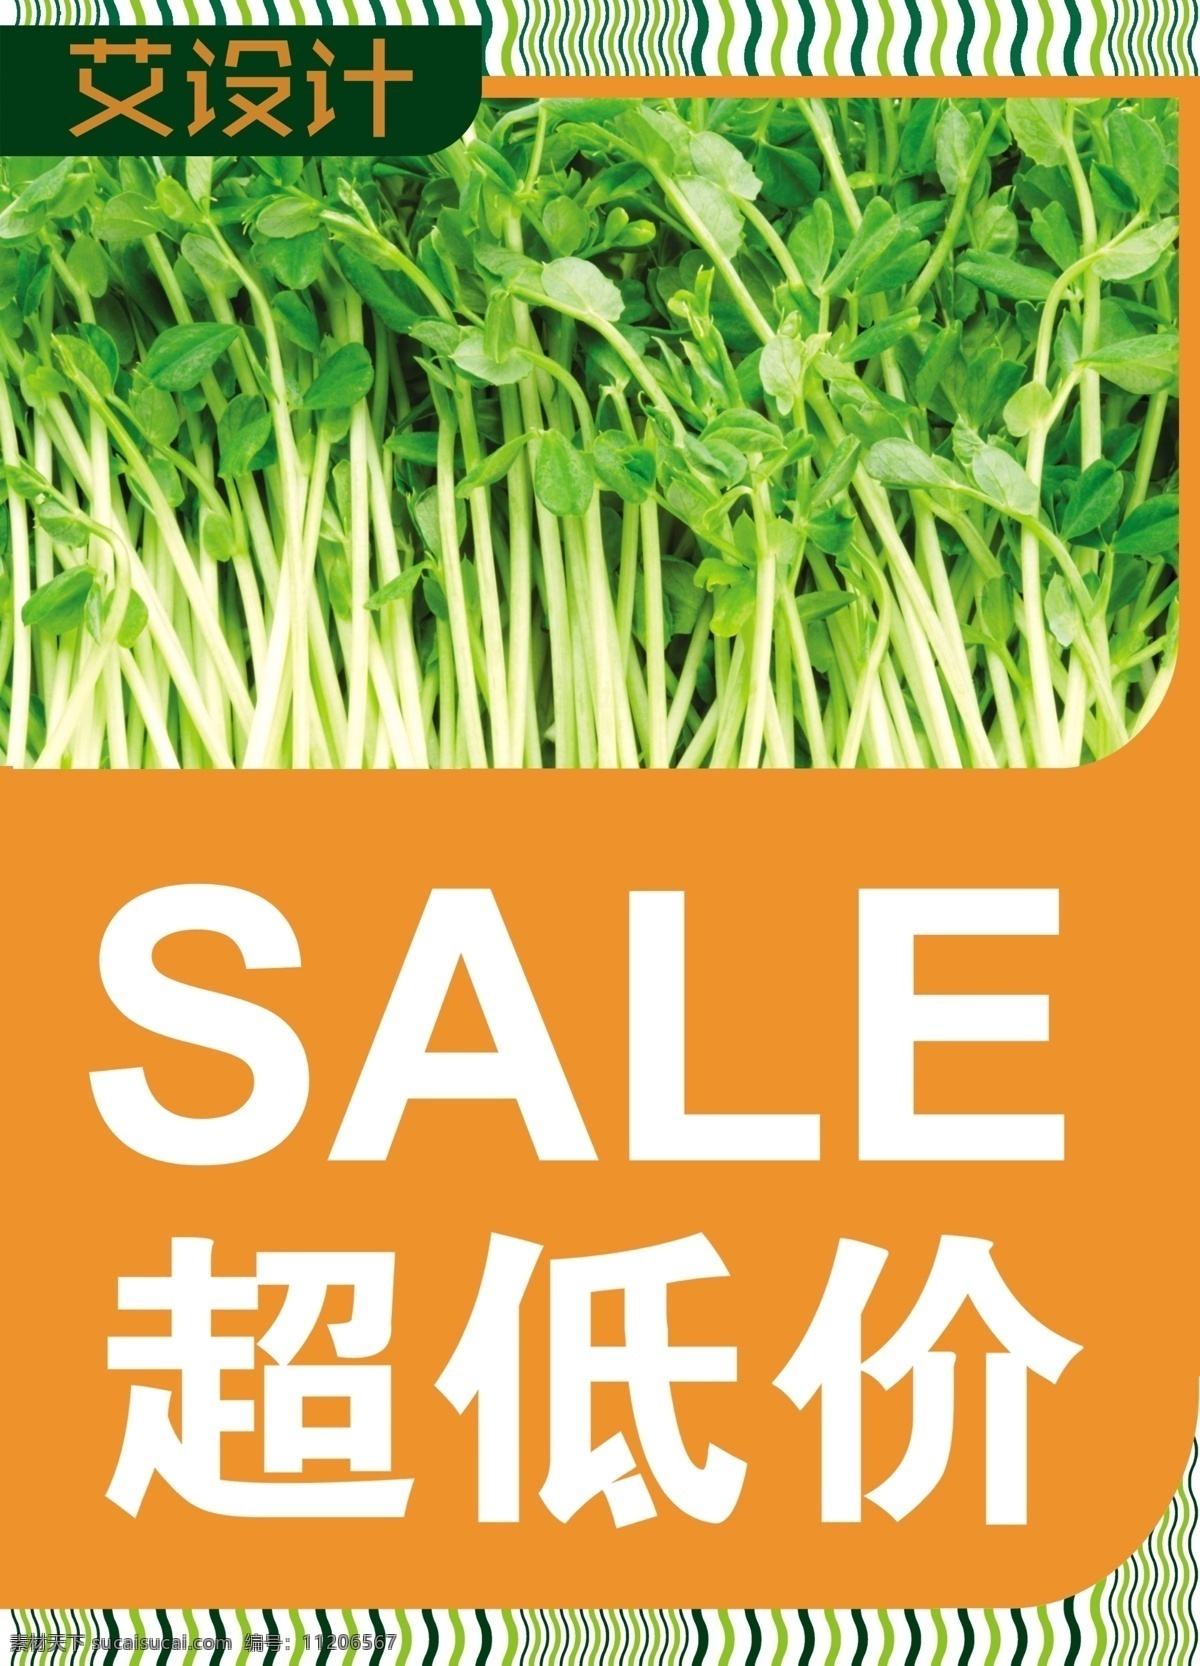 超低价海报栏 海报 低价 超低价 蔬菜 豆芽 艾设计 橙色